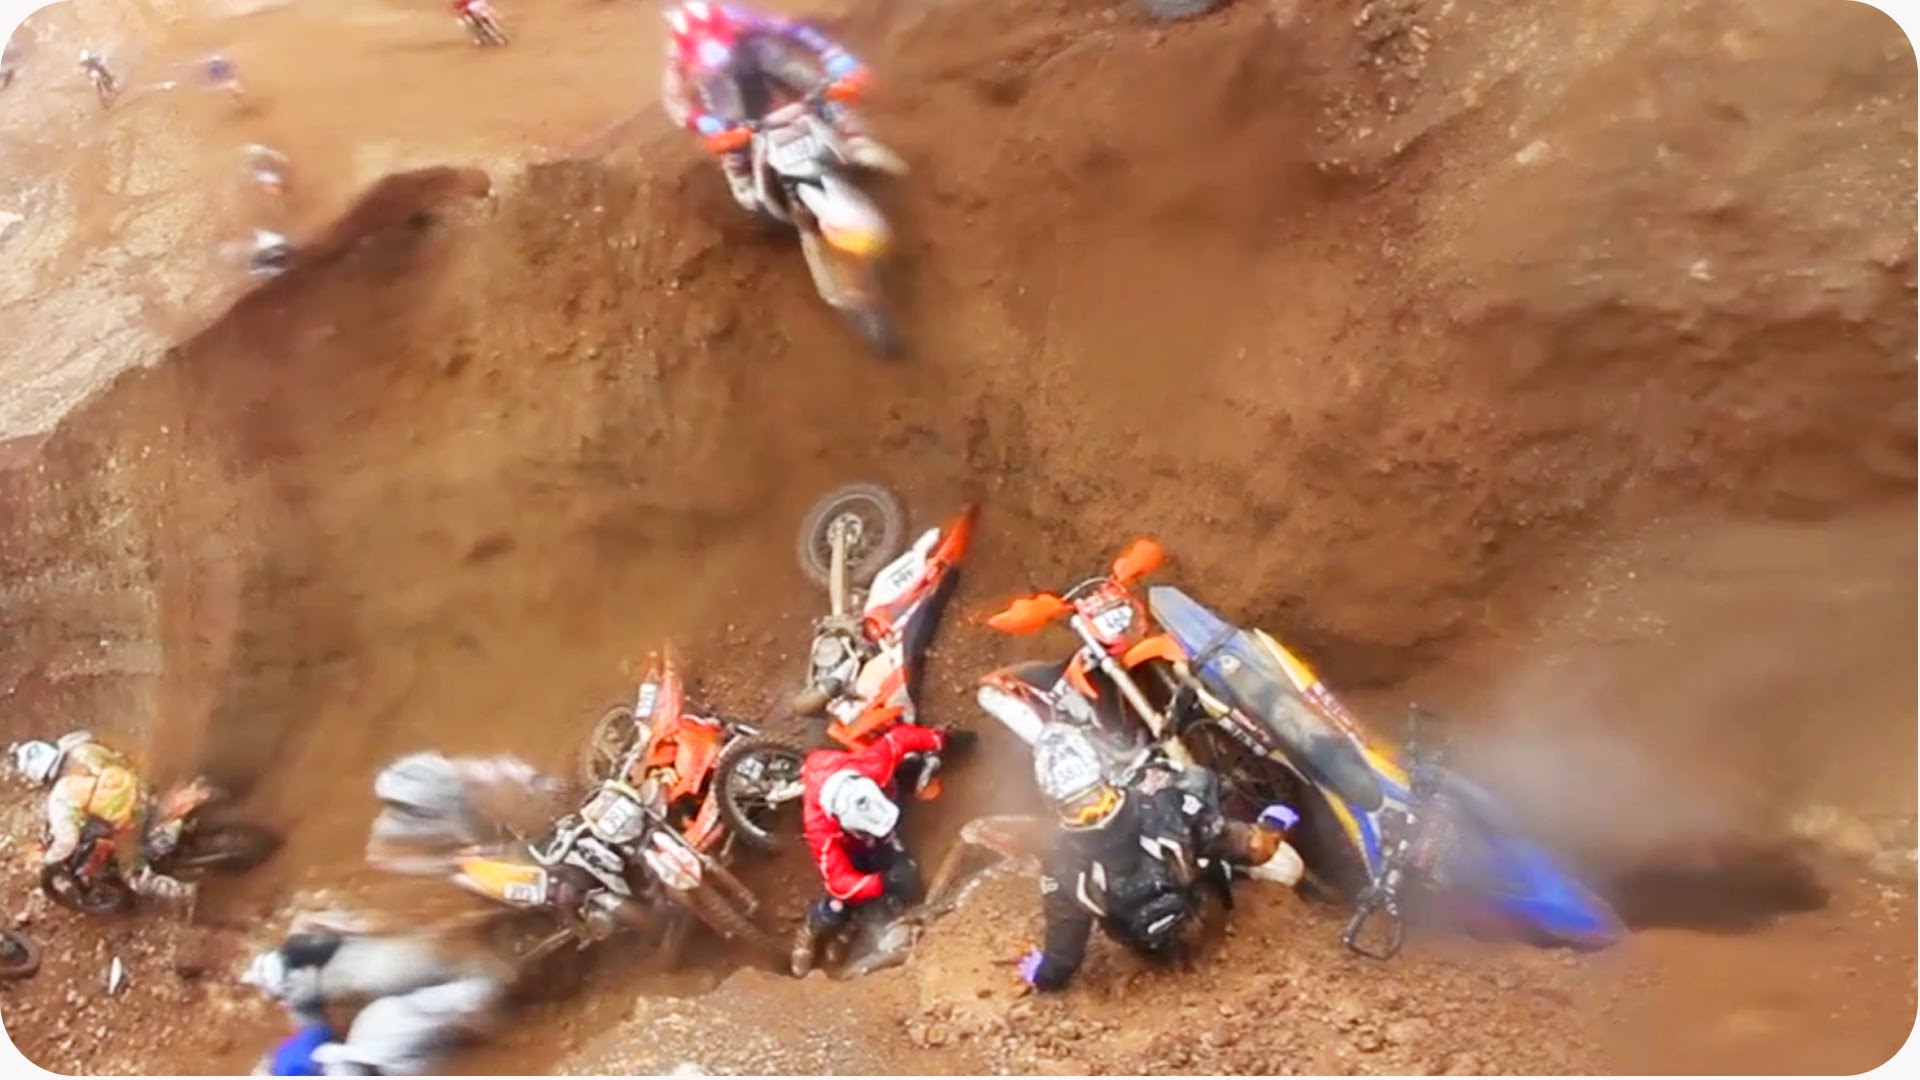 VIDEO: Motosportistu “melnais caurums”! (Dirtbikers Fall In Same Place!)